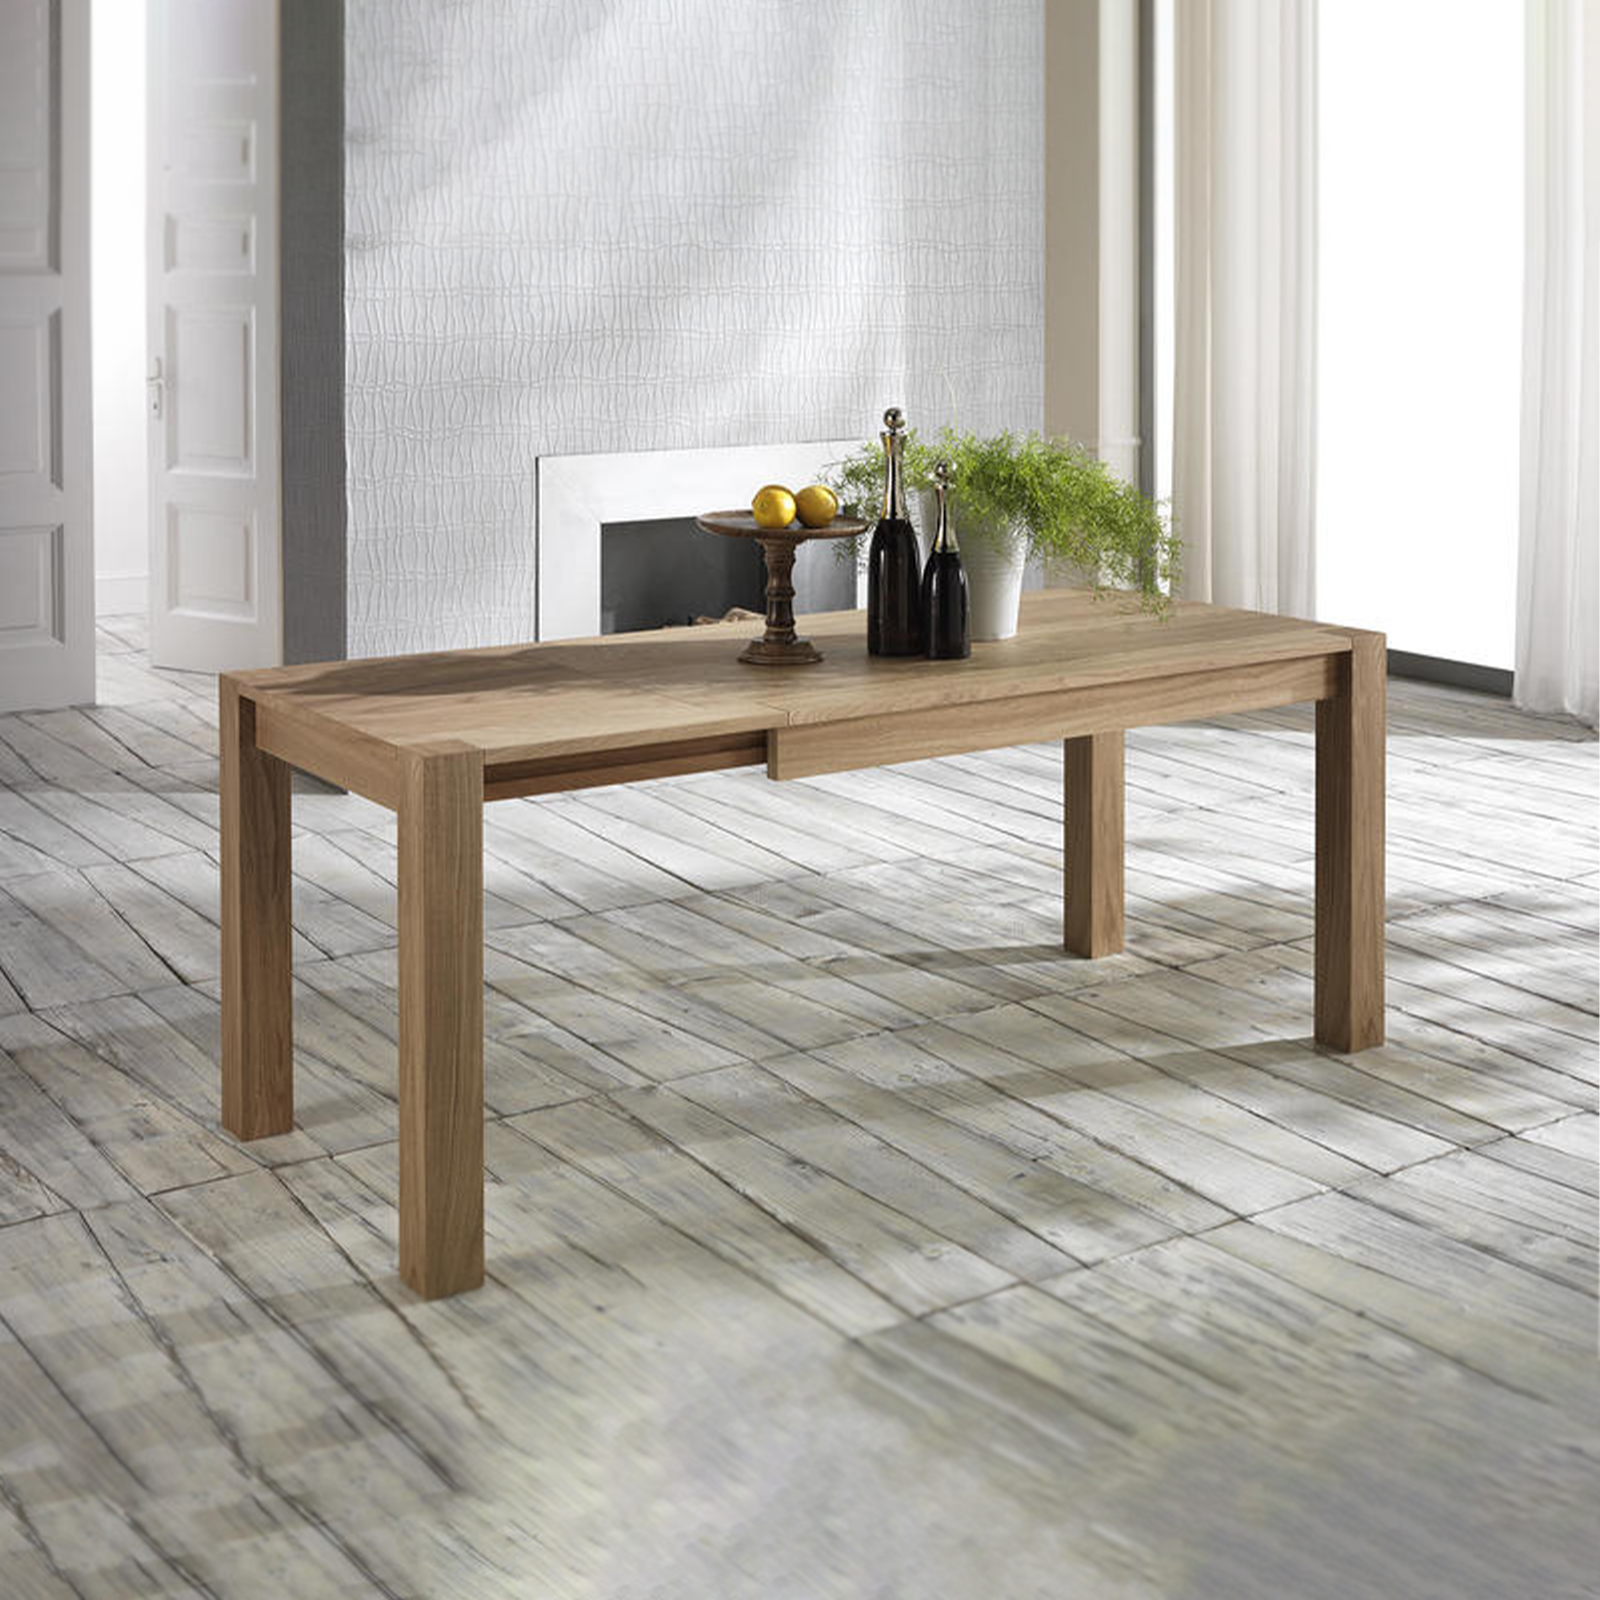 Tavolo allungabile Stones Wood piano e gambe in legno 6 posti cm 190x80 75h